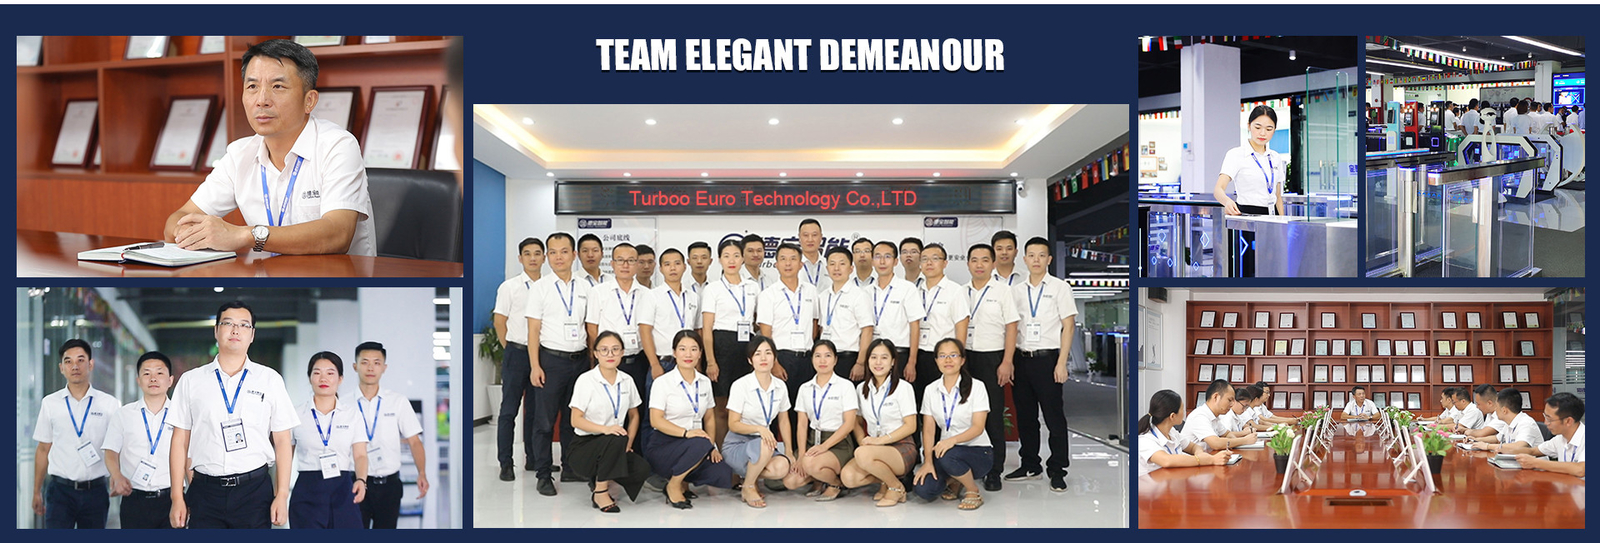 চীন Turboo Euro Technology Co., Ltd. সংস্থা প্রোফাইল